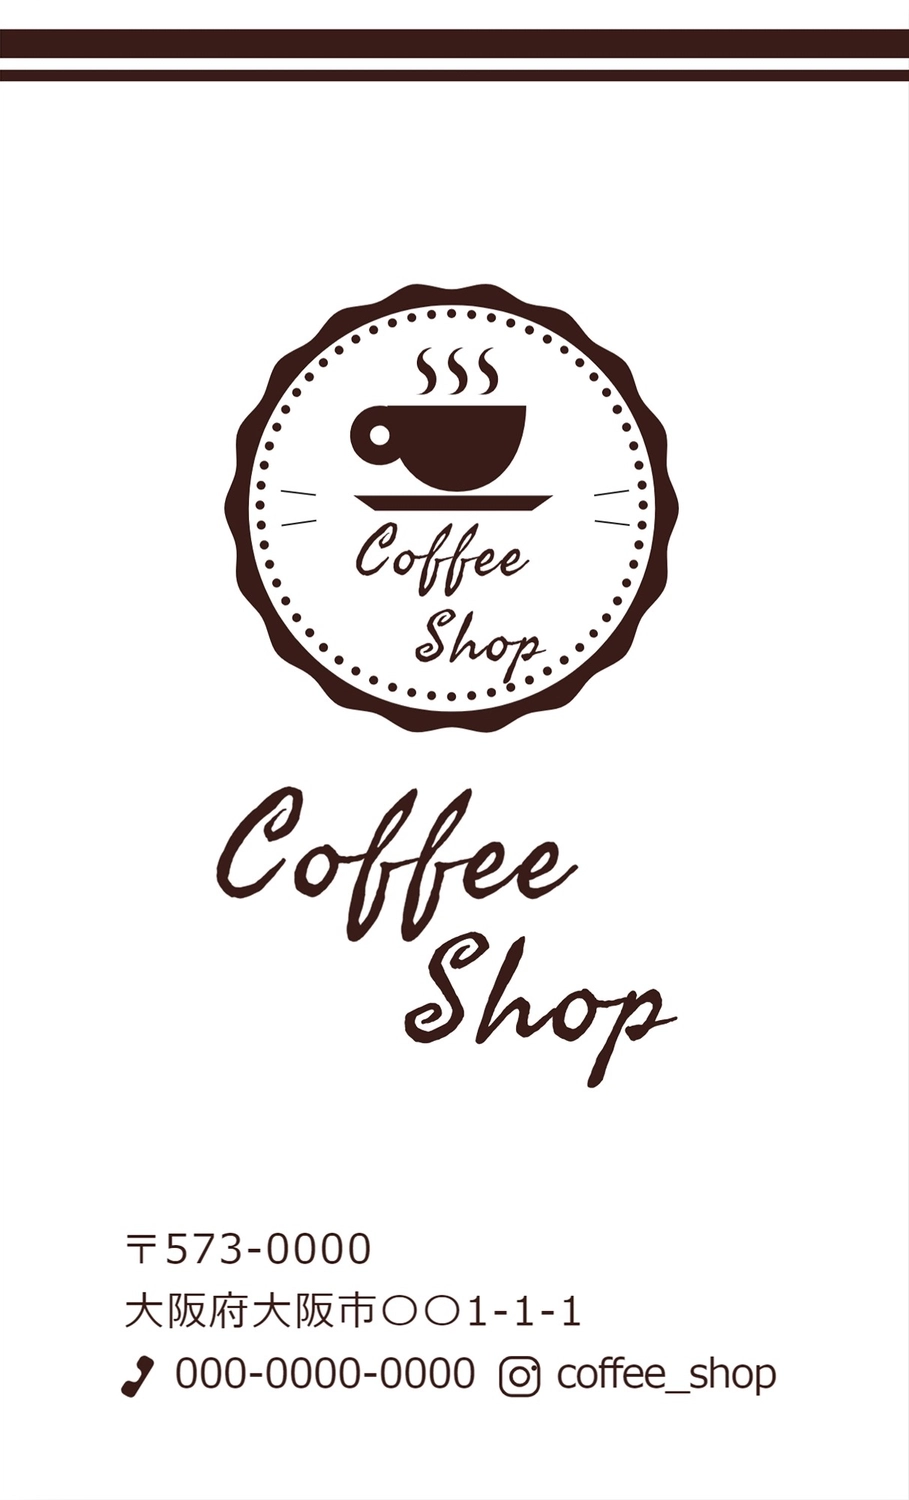 コーヒーショップカード, card, create, design, Sales promotion tool template